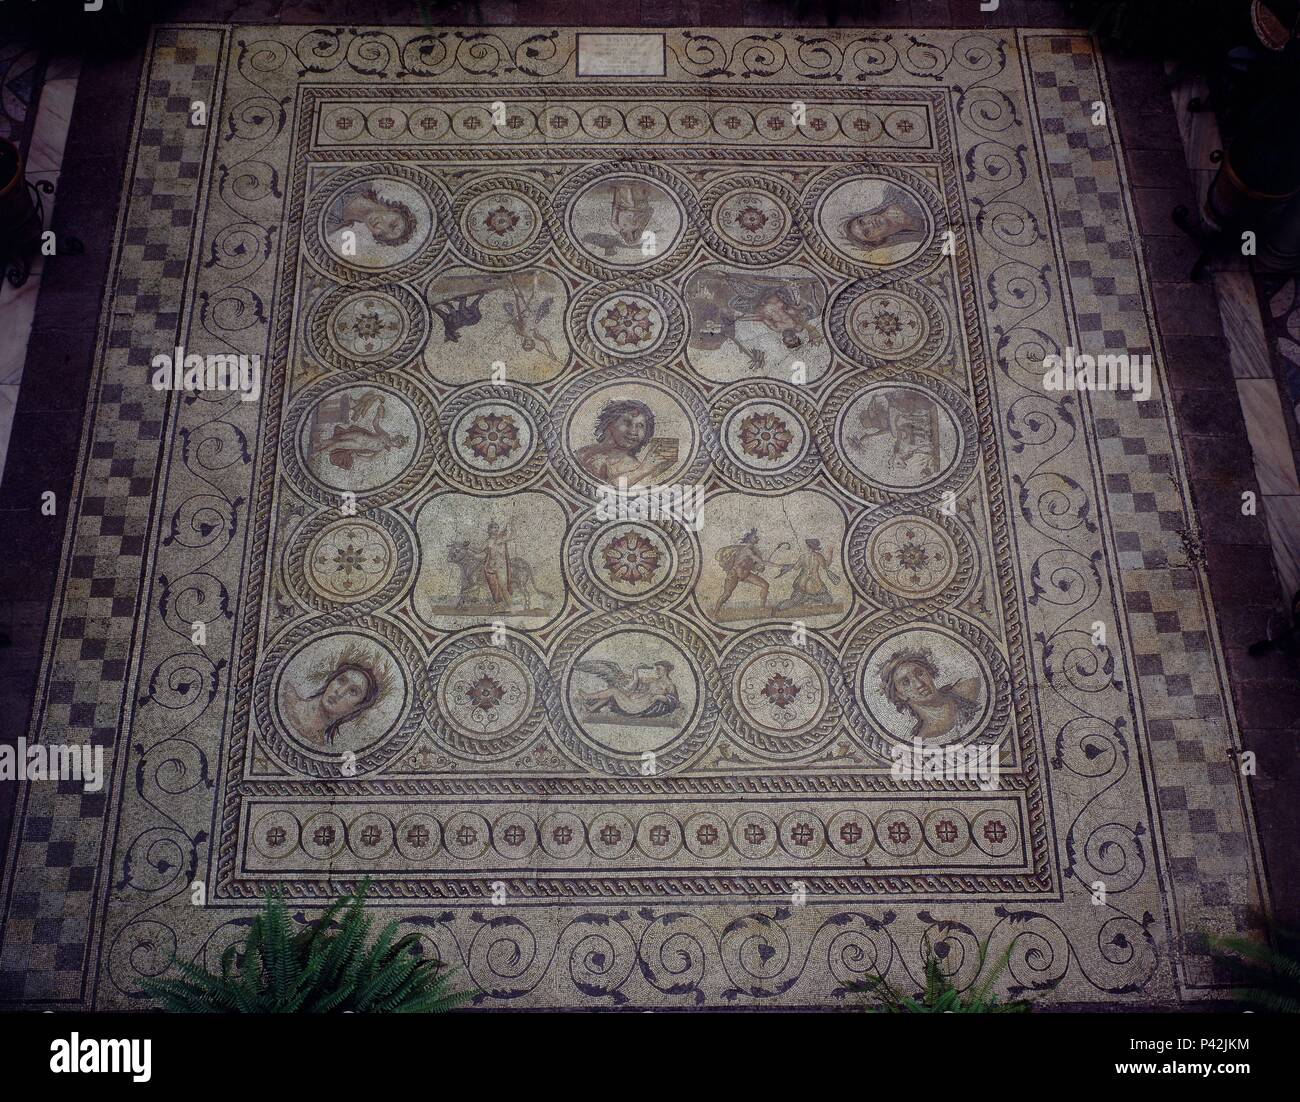 El mosaico romano del dios Pan - PROCEDENTE DE itálica - Siglo II. Lugar: CASA DE LA Condesa de Lebrija, Sevilla, SEVILLA. Foto de stock